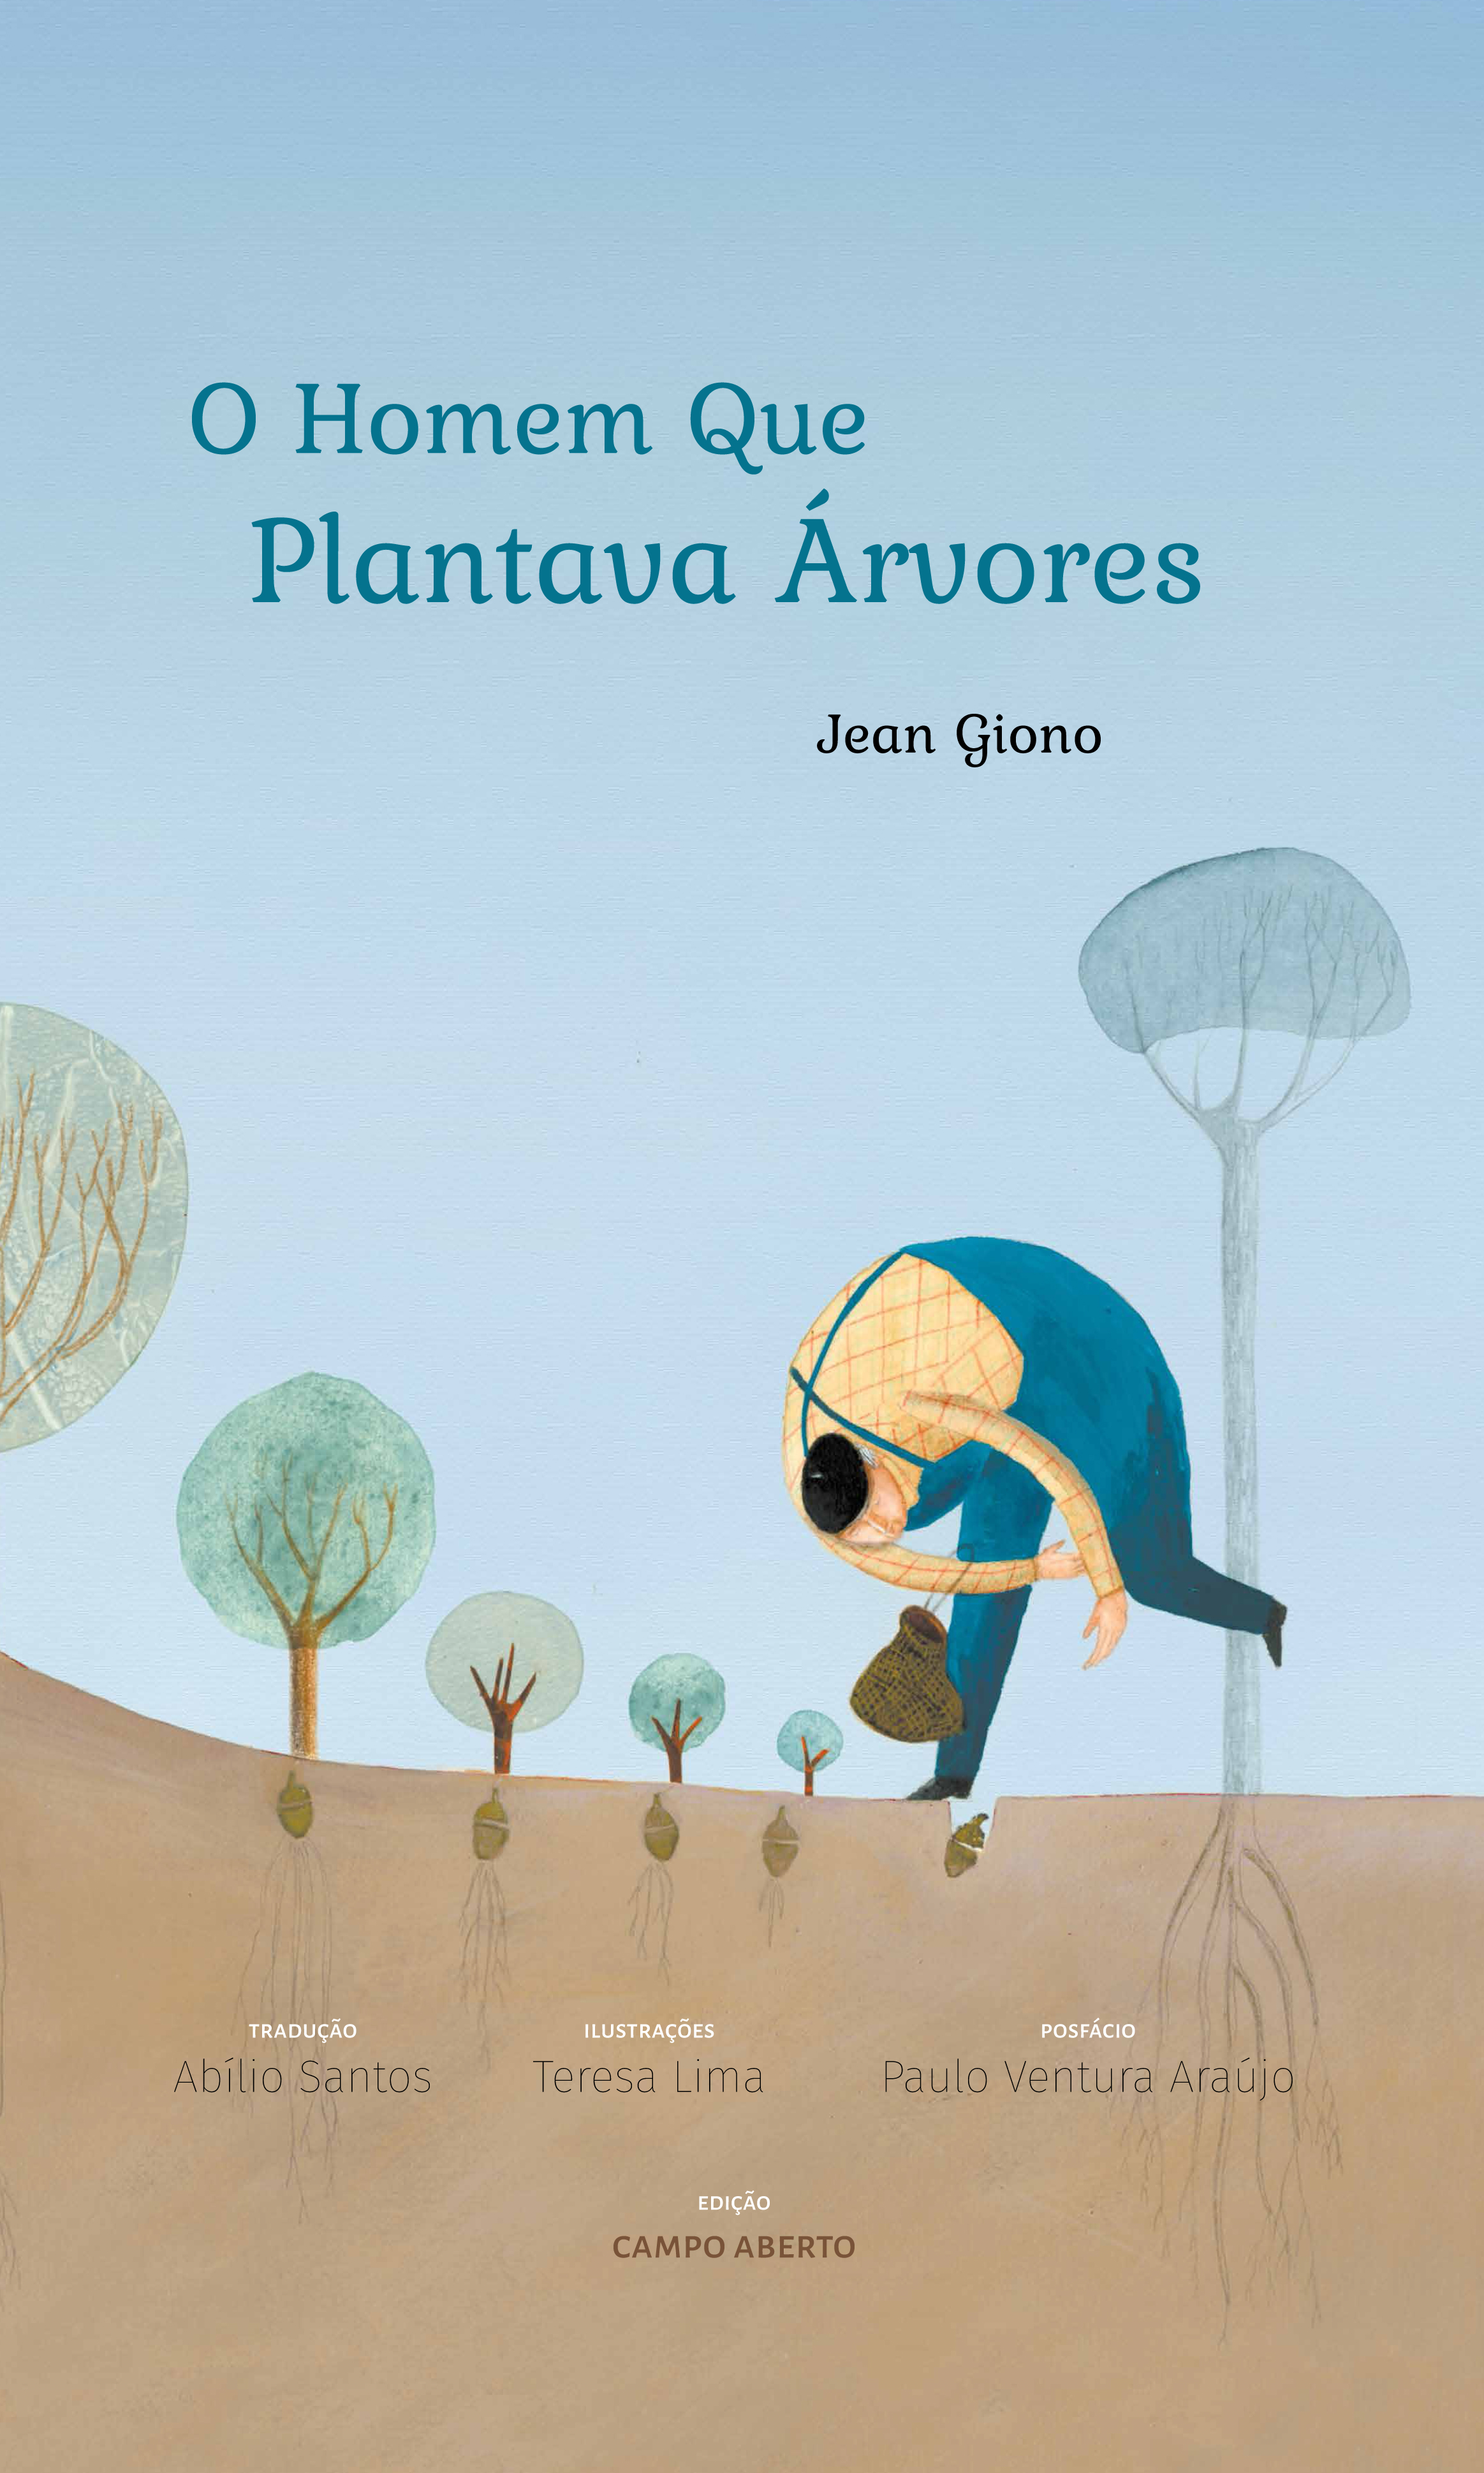 O Homem Que Plantava Árvores: um livro para crianças e adultos lerem juntos